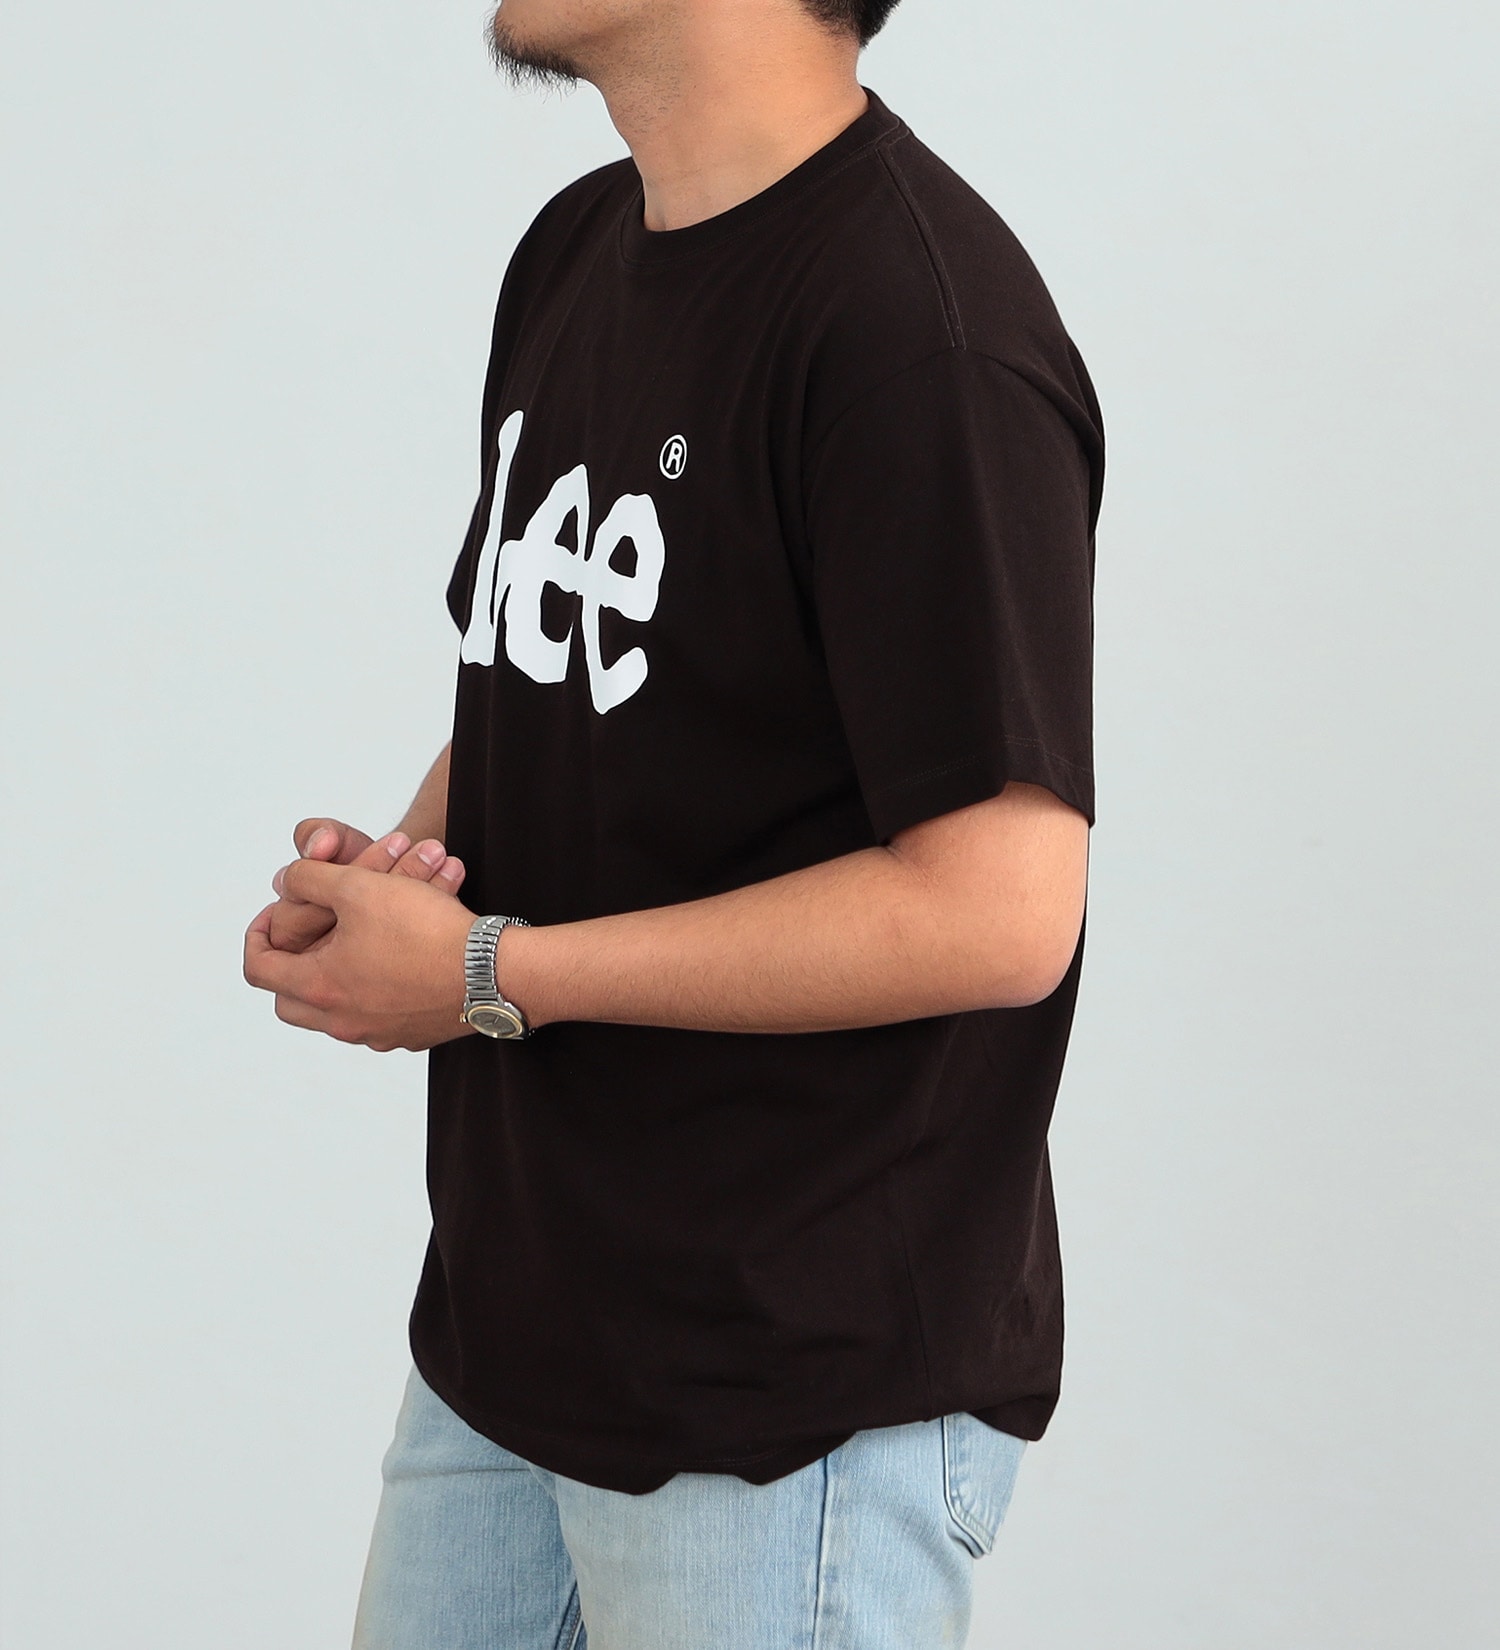 Lee(リー)のLee ロゴ ショートスリーブTee|トップス/Tシャツ/カットソー/メンズ|ブラック